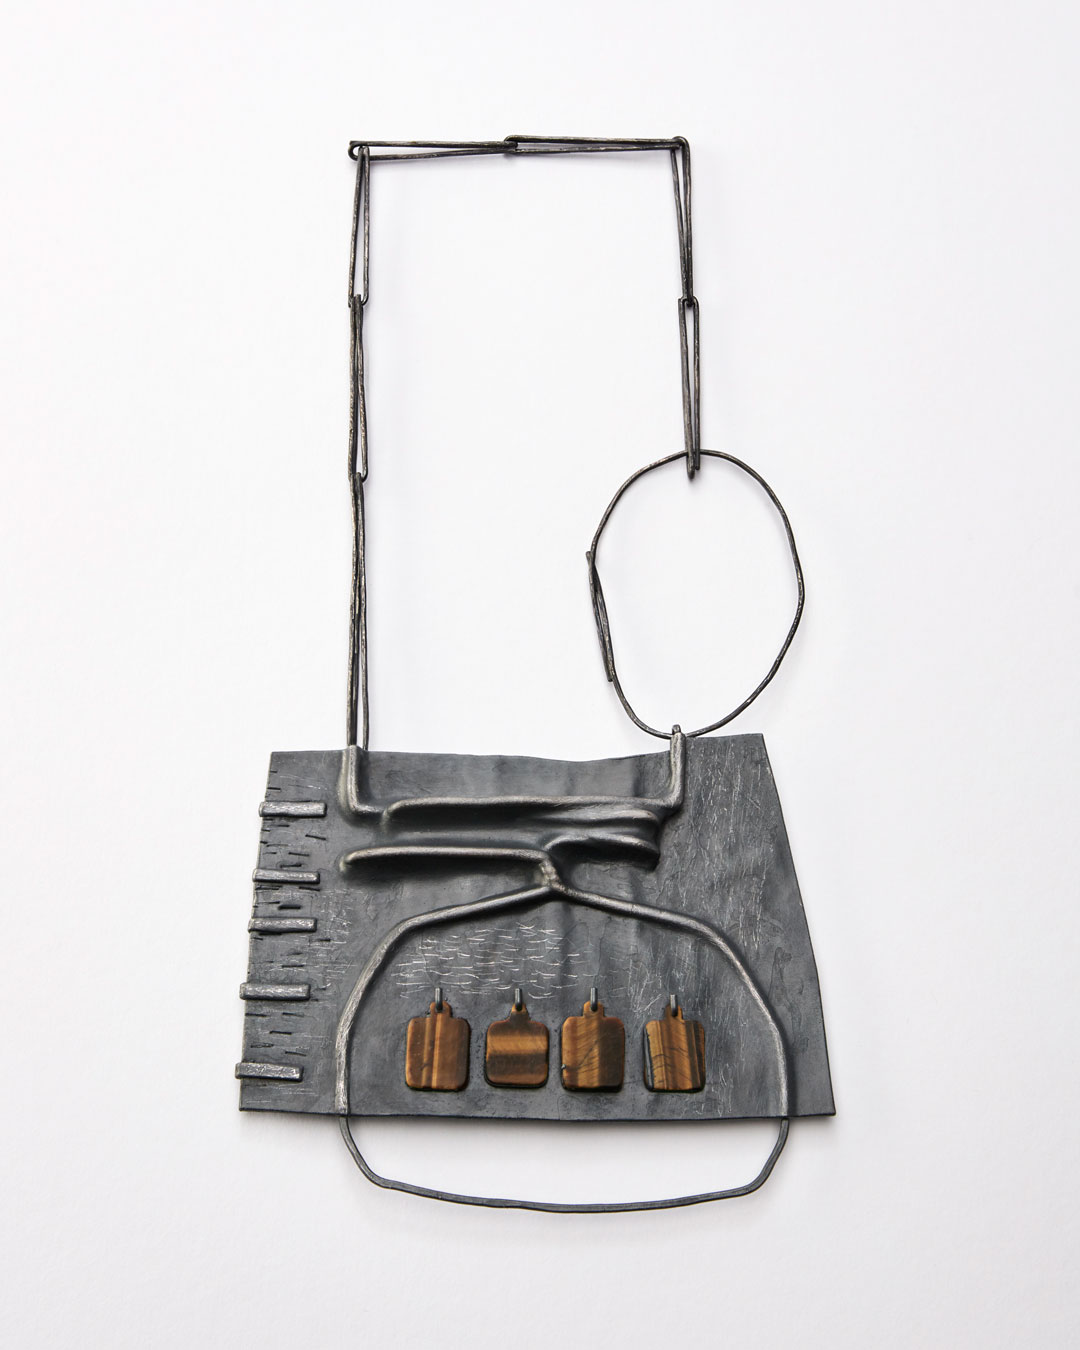 Iris Bodemer, Klang 3 (Geluid 3), 2019, hanger; zilver, thermoplast, tijgeroog, 110 x 135 x 10 mm, €4250